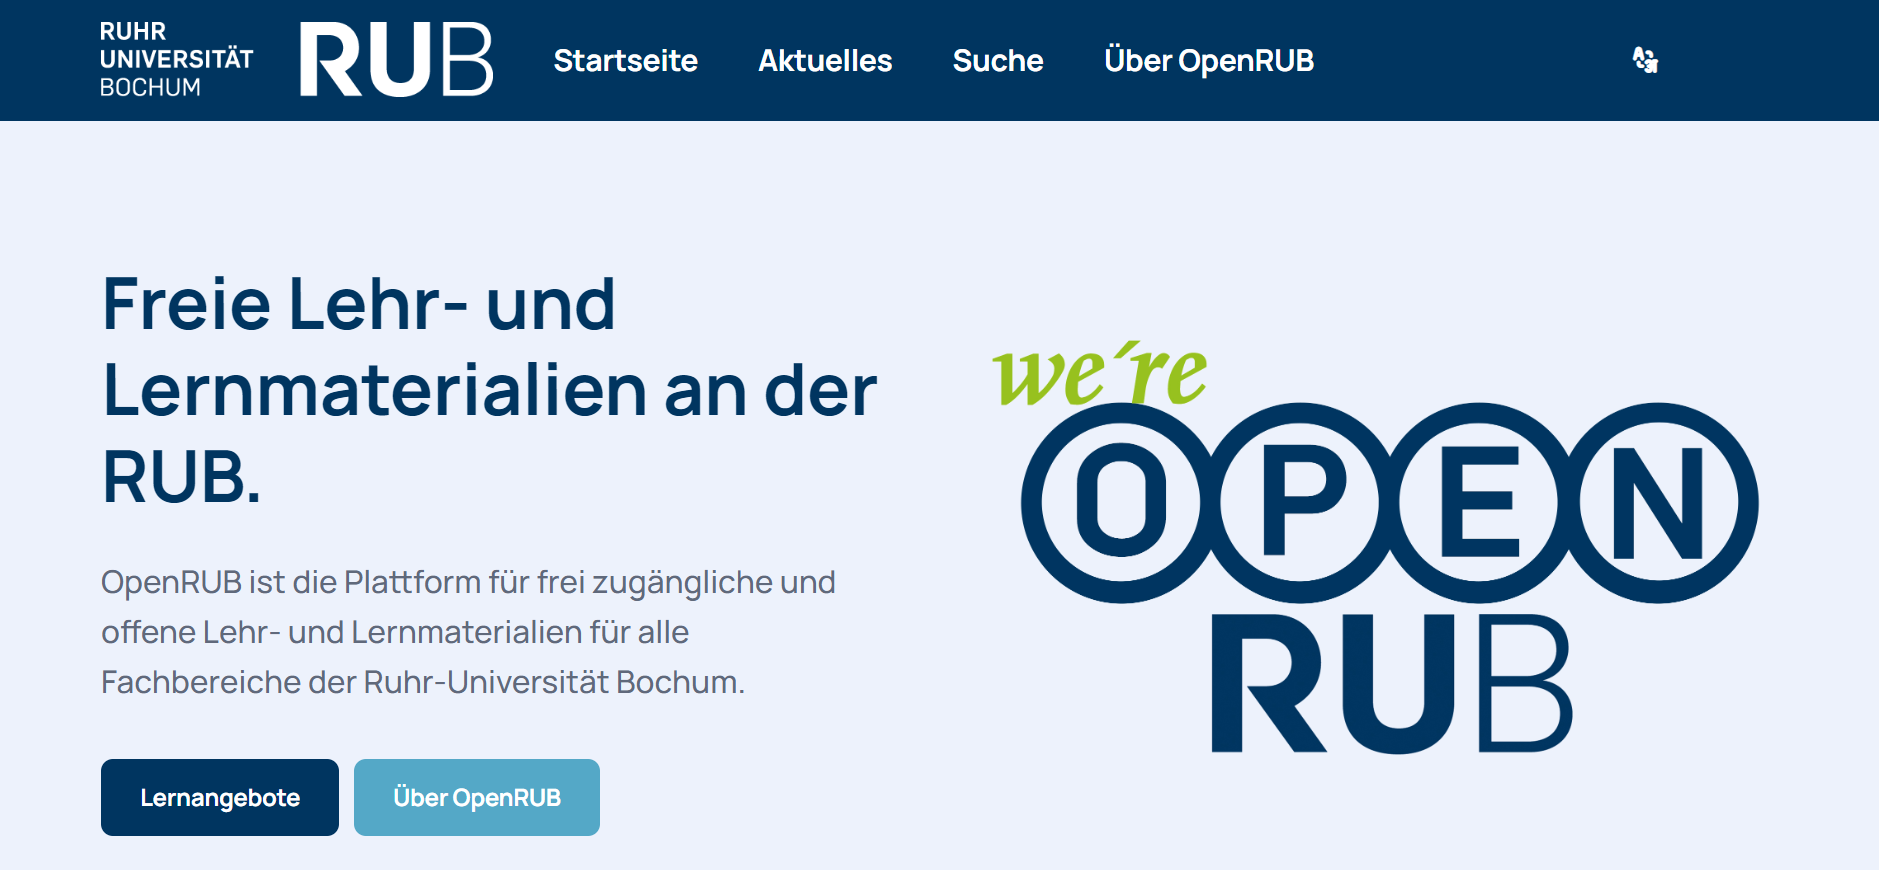 Startseite der "Open RUB", für freie Lehr- und Lernmaterialien an der RUB.